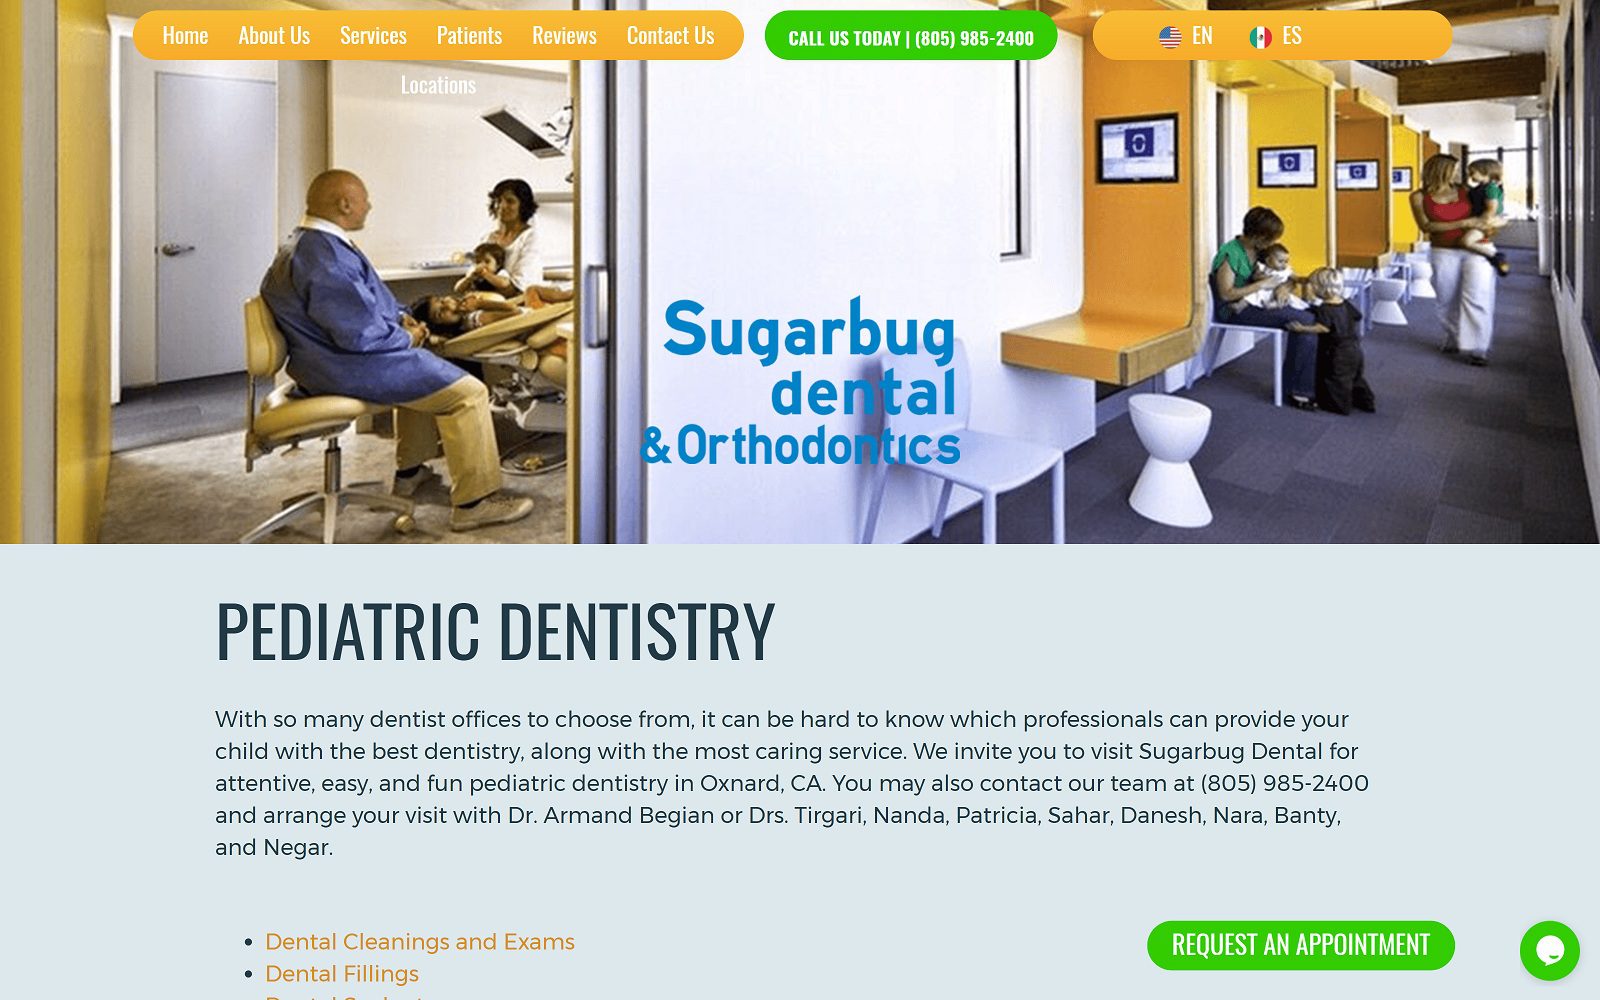 sugarbugdental.com services pediatric dentistry